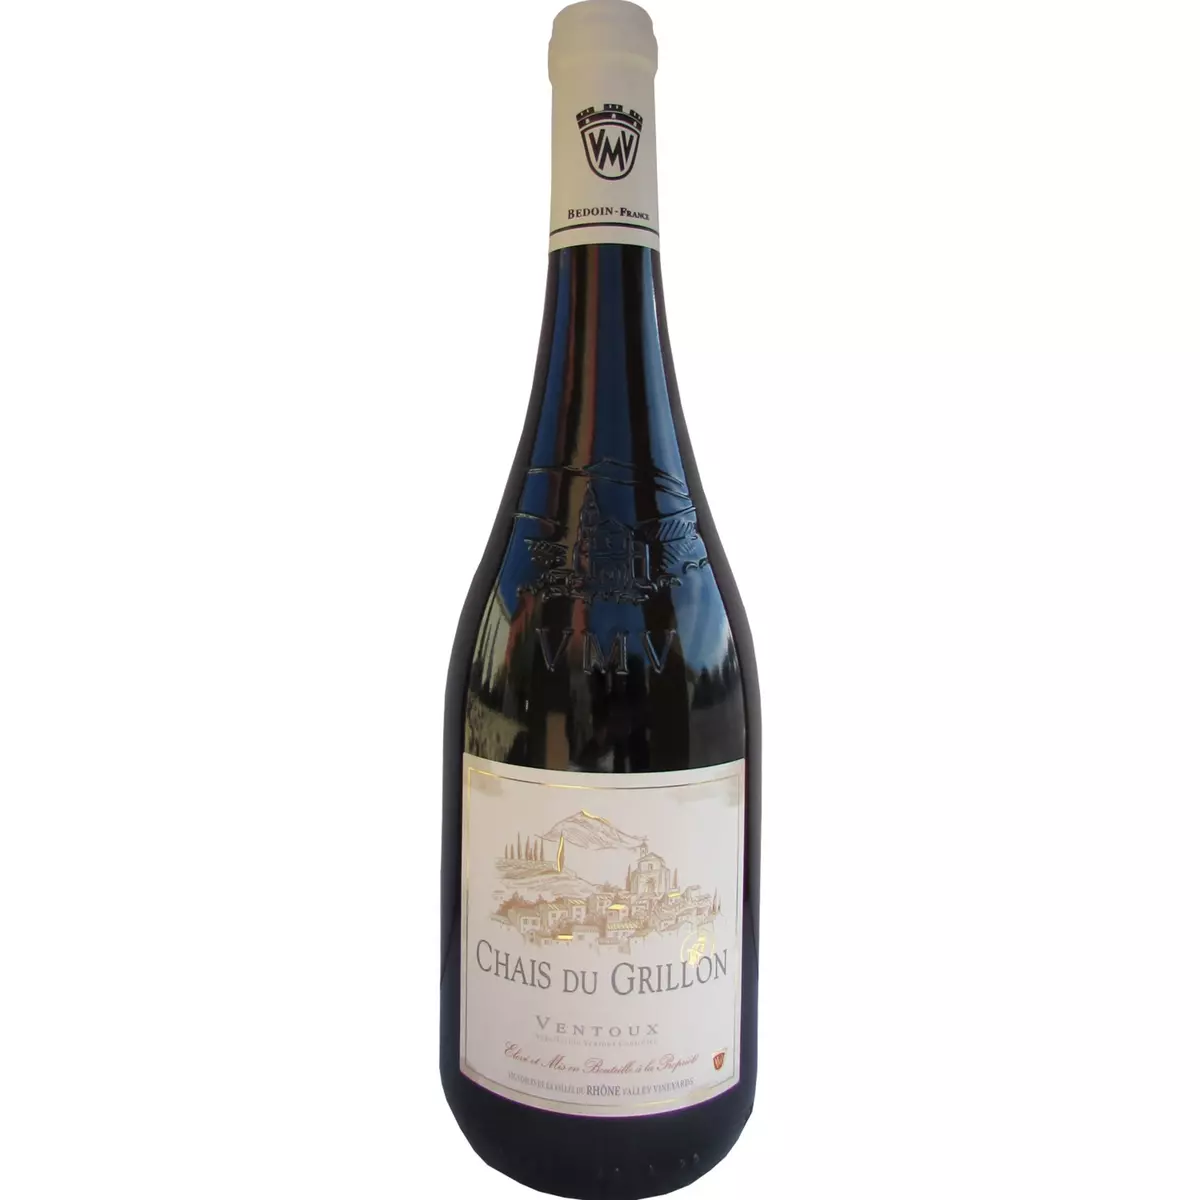 VENTOUX Vin rouge AOP Côtes-du-Ventoux Chais du Grillon 75cl